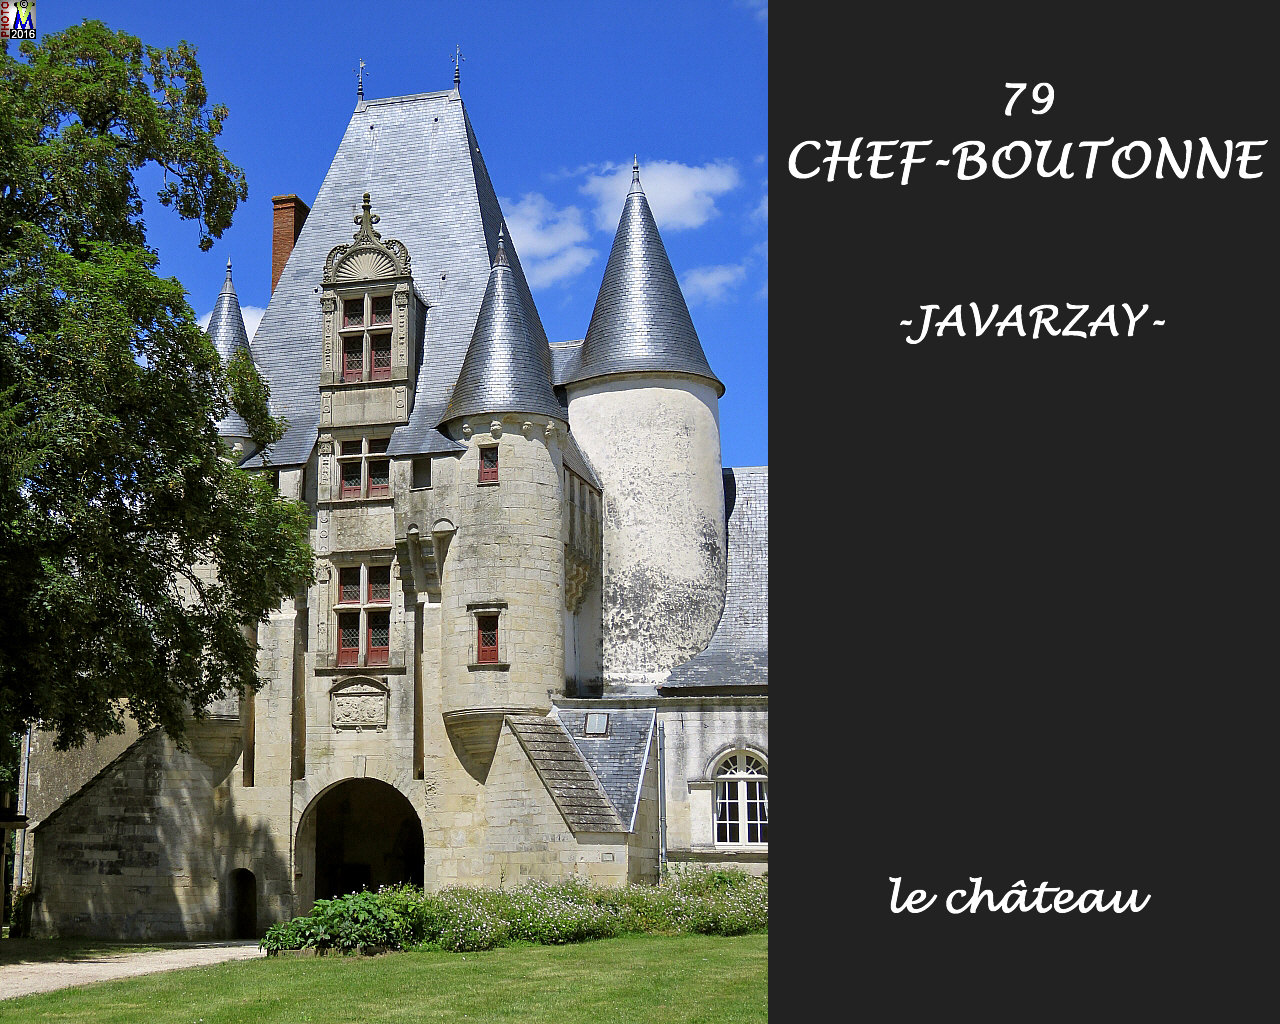 79CHEF-BOUTONNEzJAVARZAY_chateau_1004.jpg